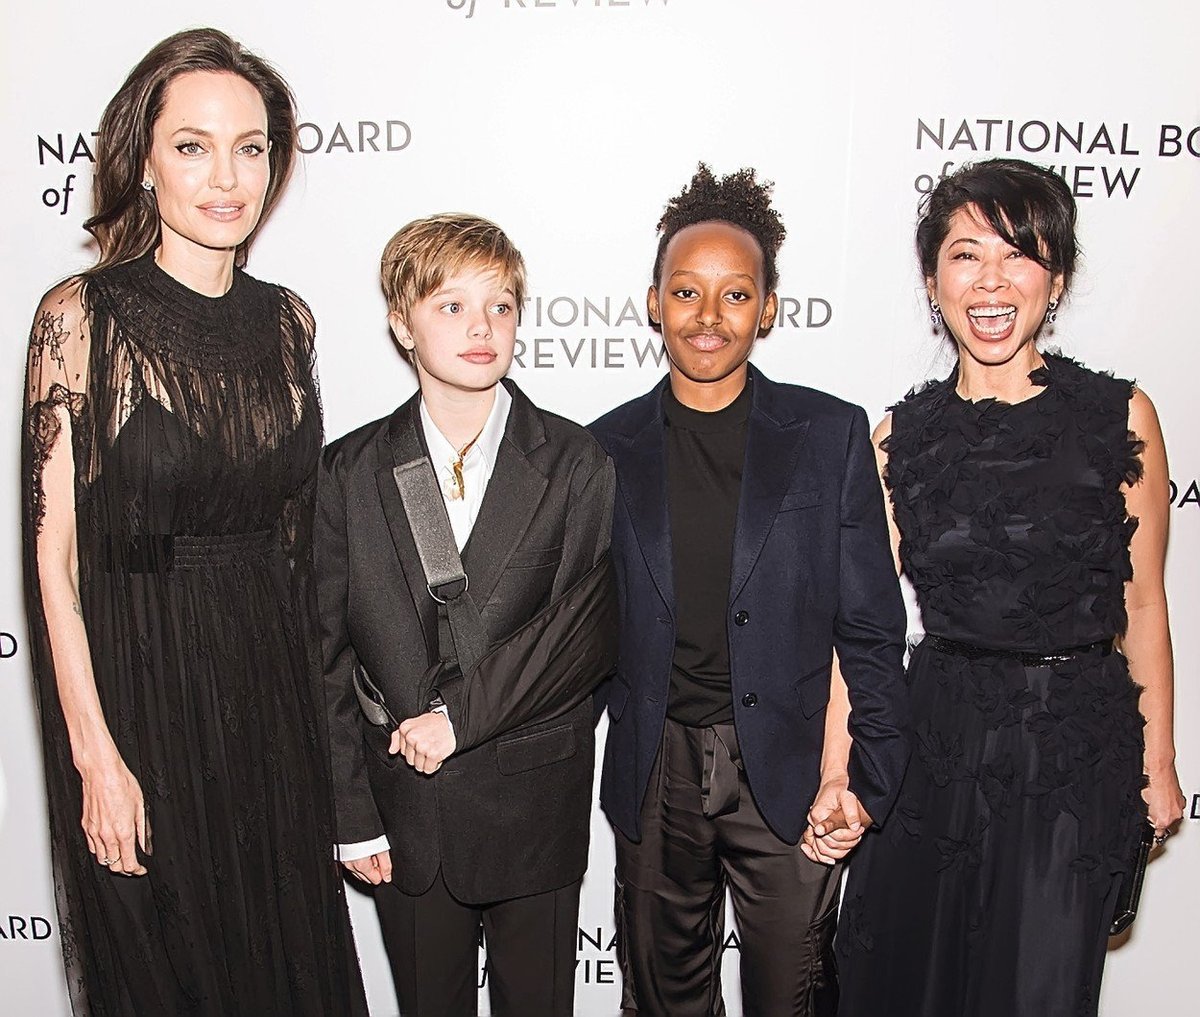 Herečka Angelina Jolie s dětmi, po její levici Shiloh